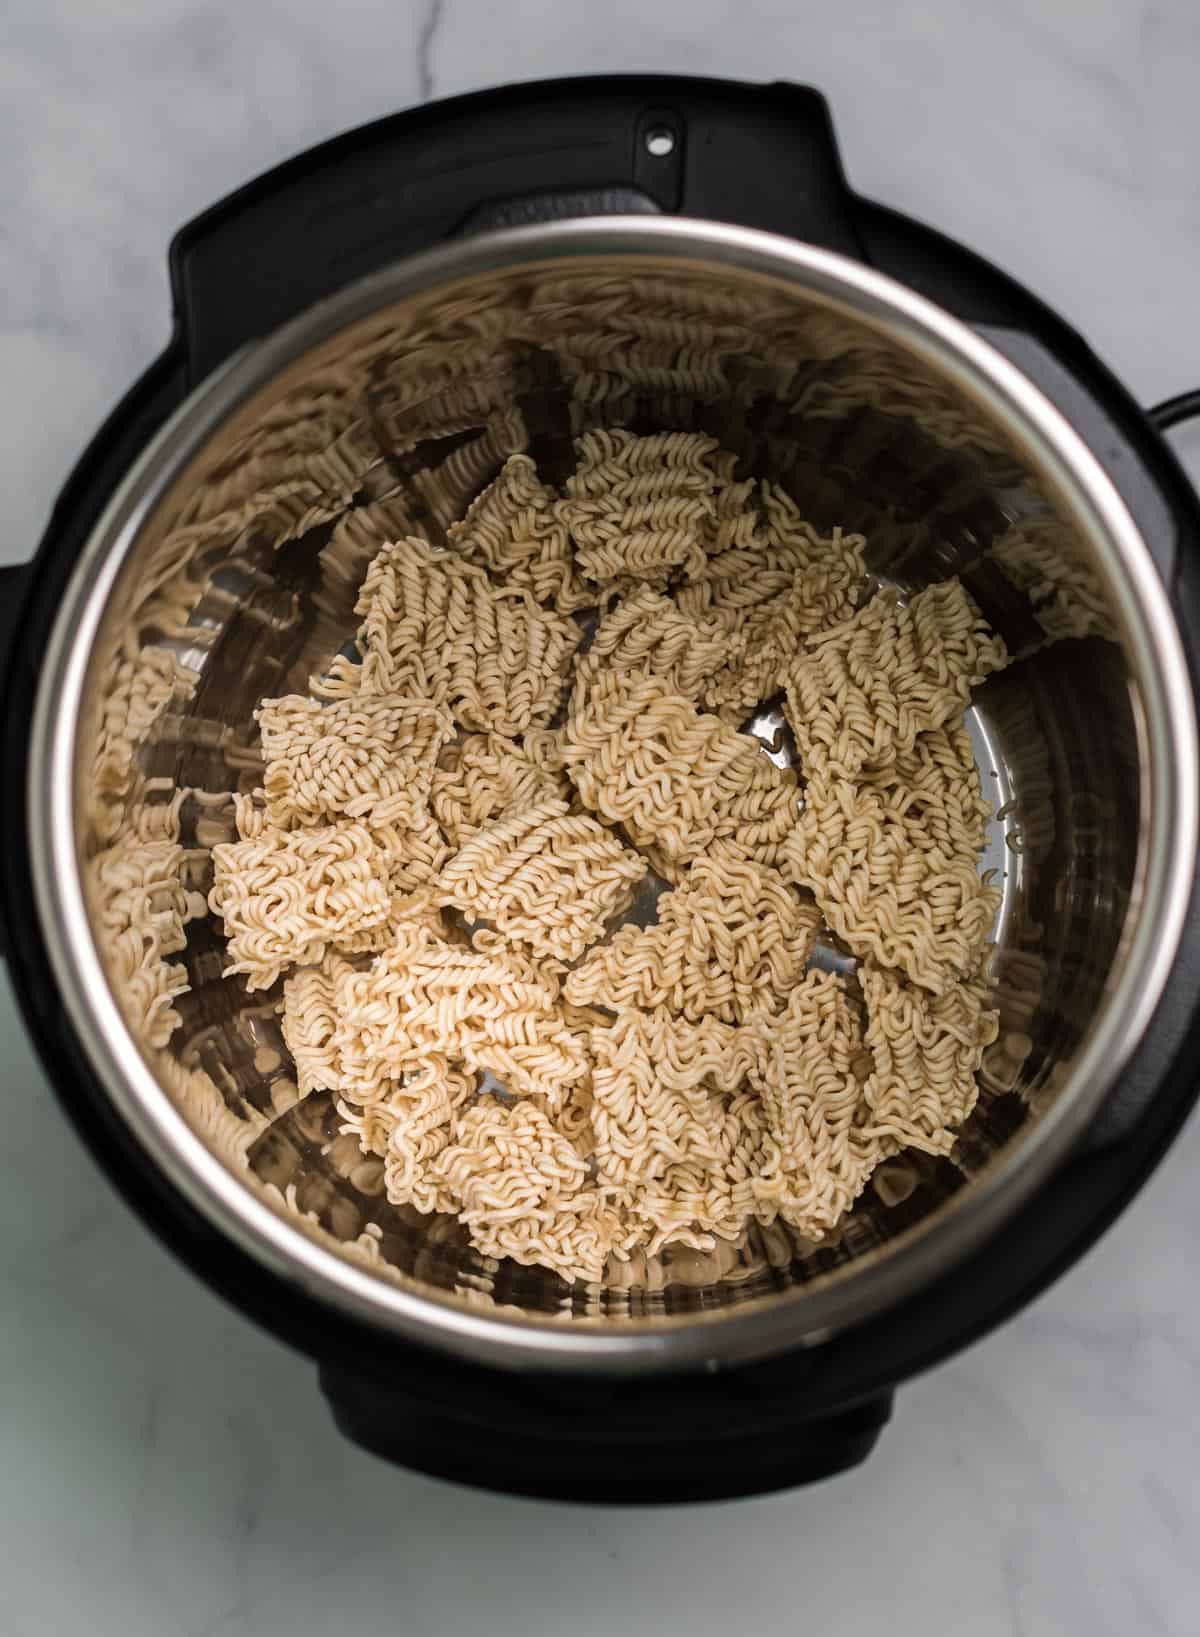 ramen noodles broken up inside an instant pot